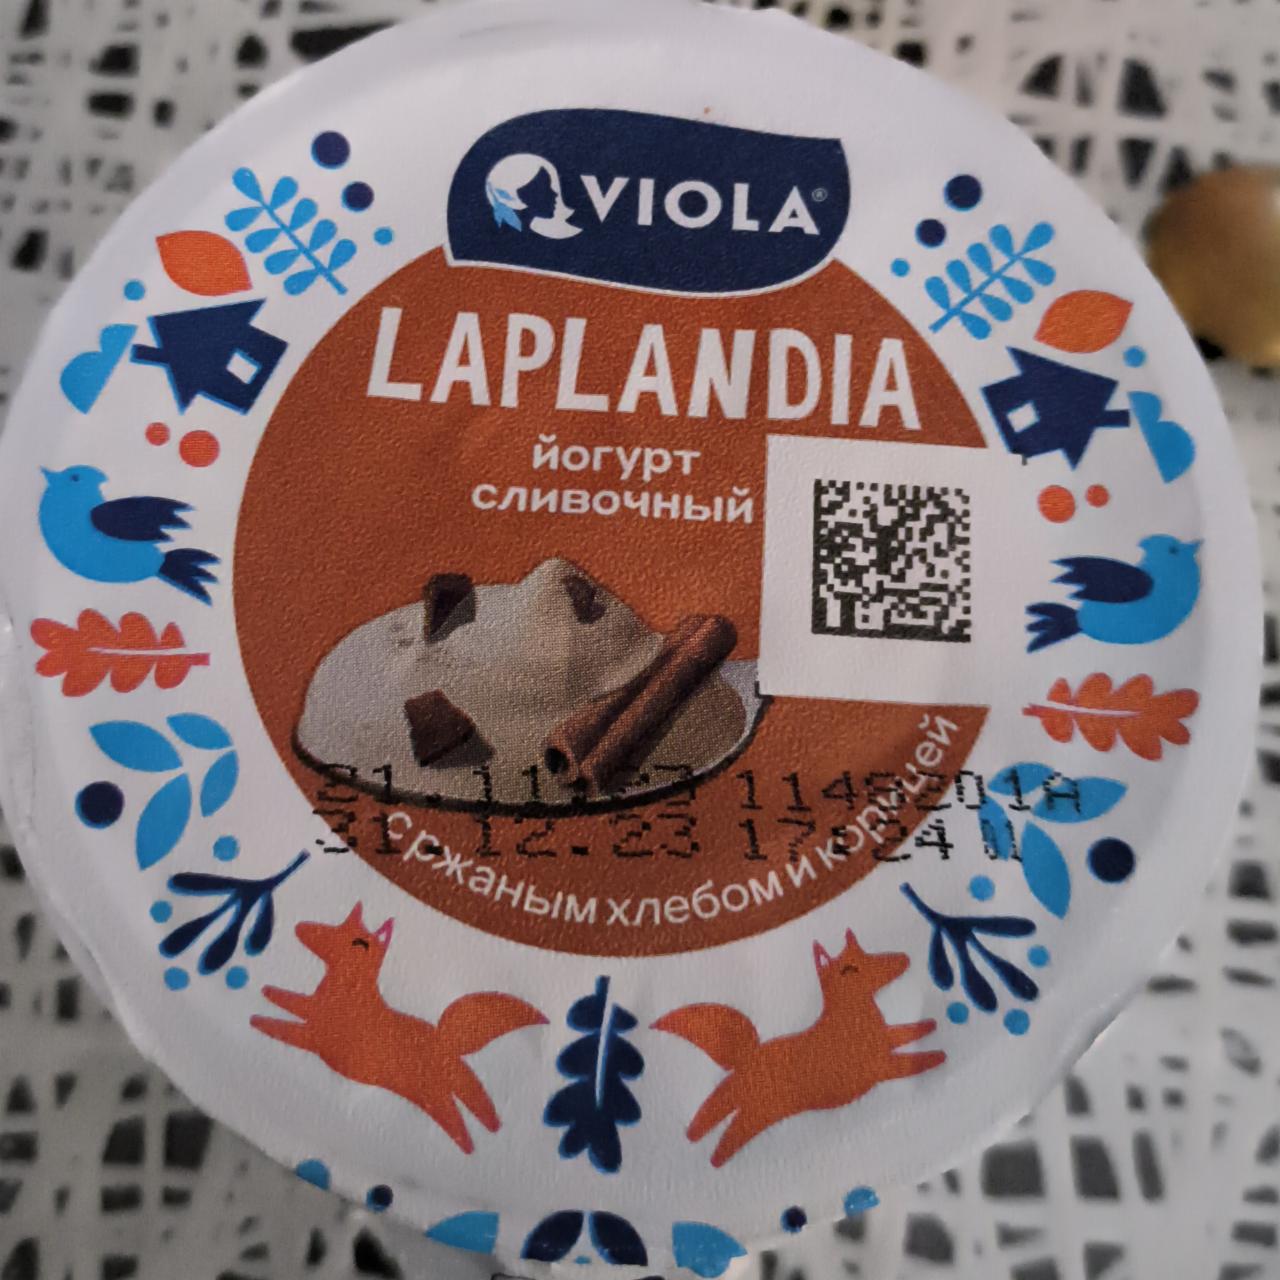 Фото - Laplandia йогурт сливочный с ржаным хлебом и корицей Valio